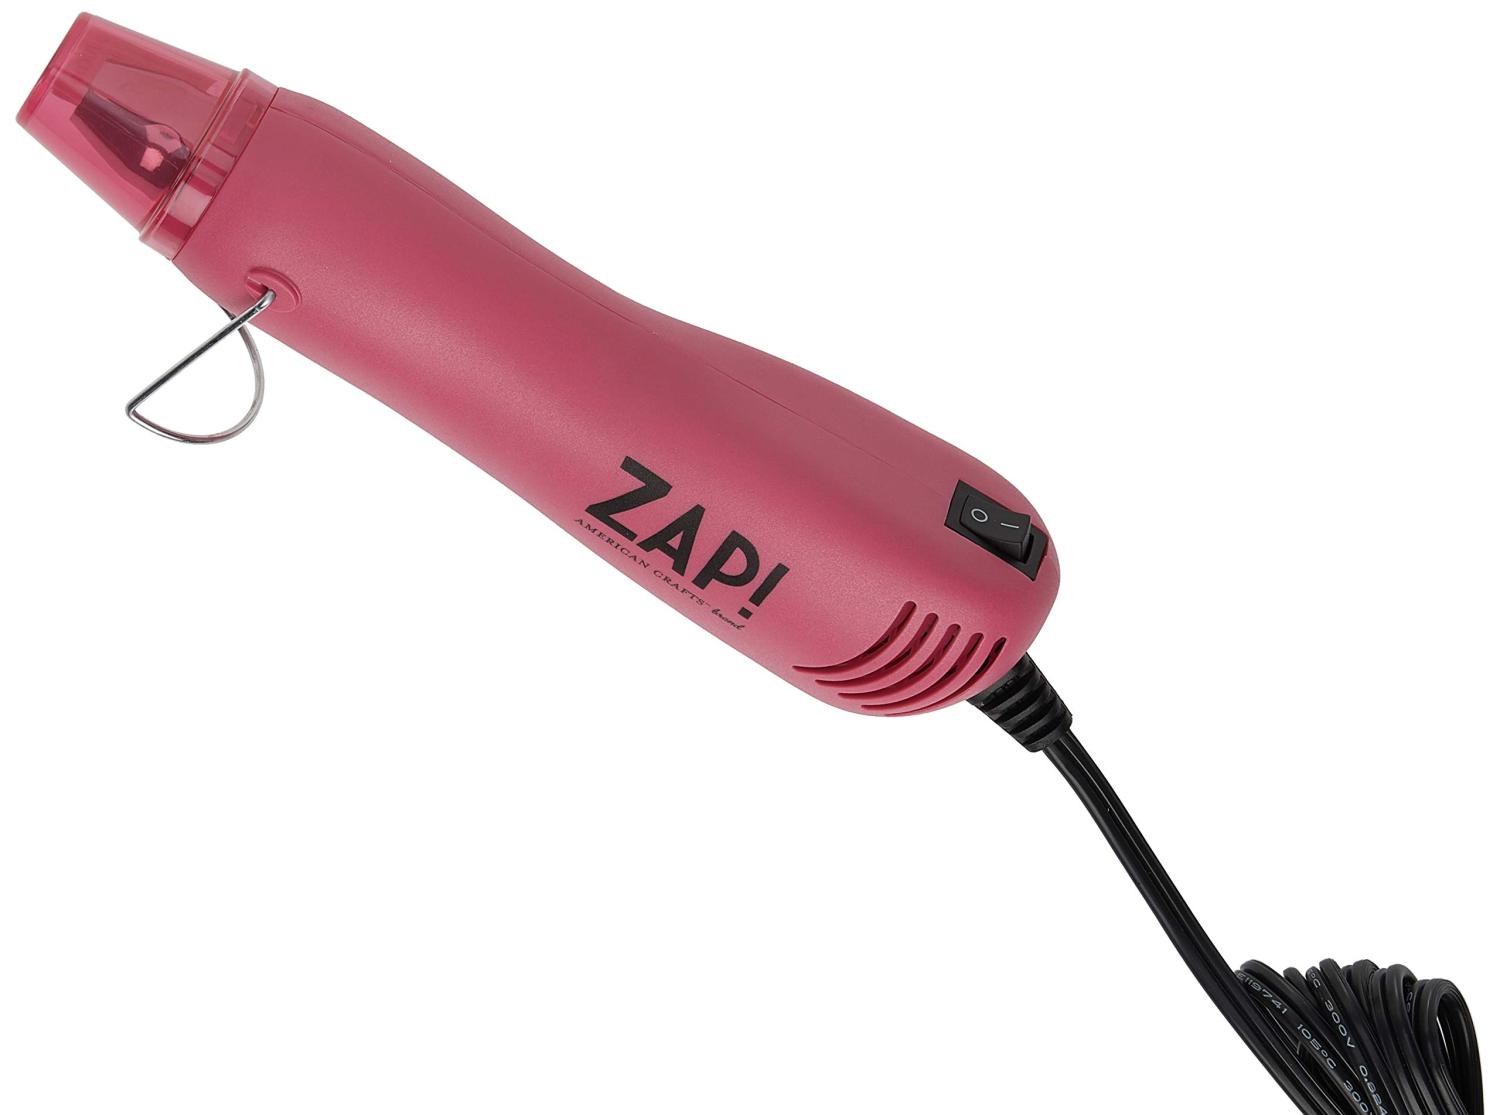 American Crafts Zap Heat Gun, Pink